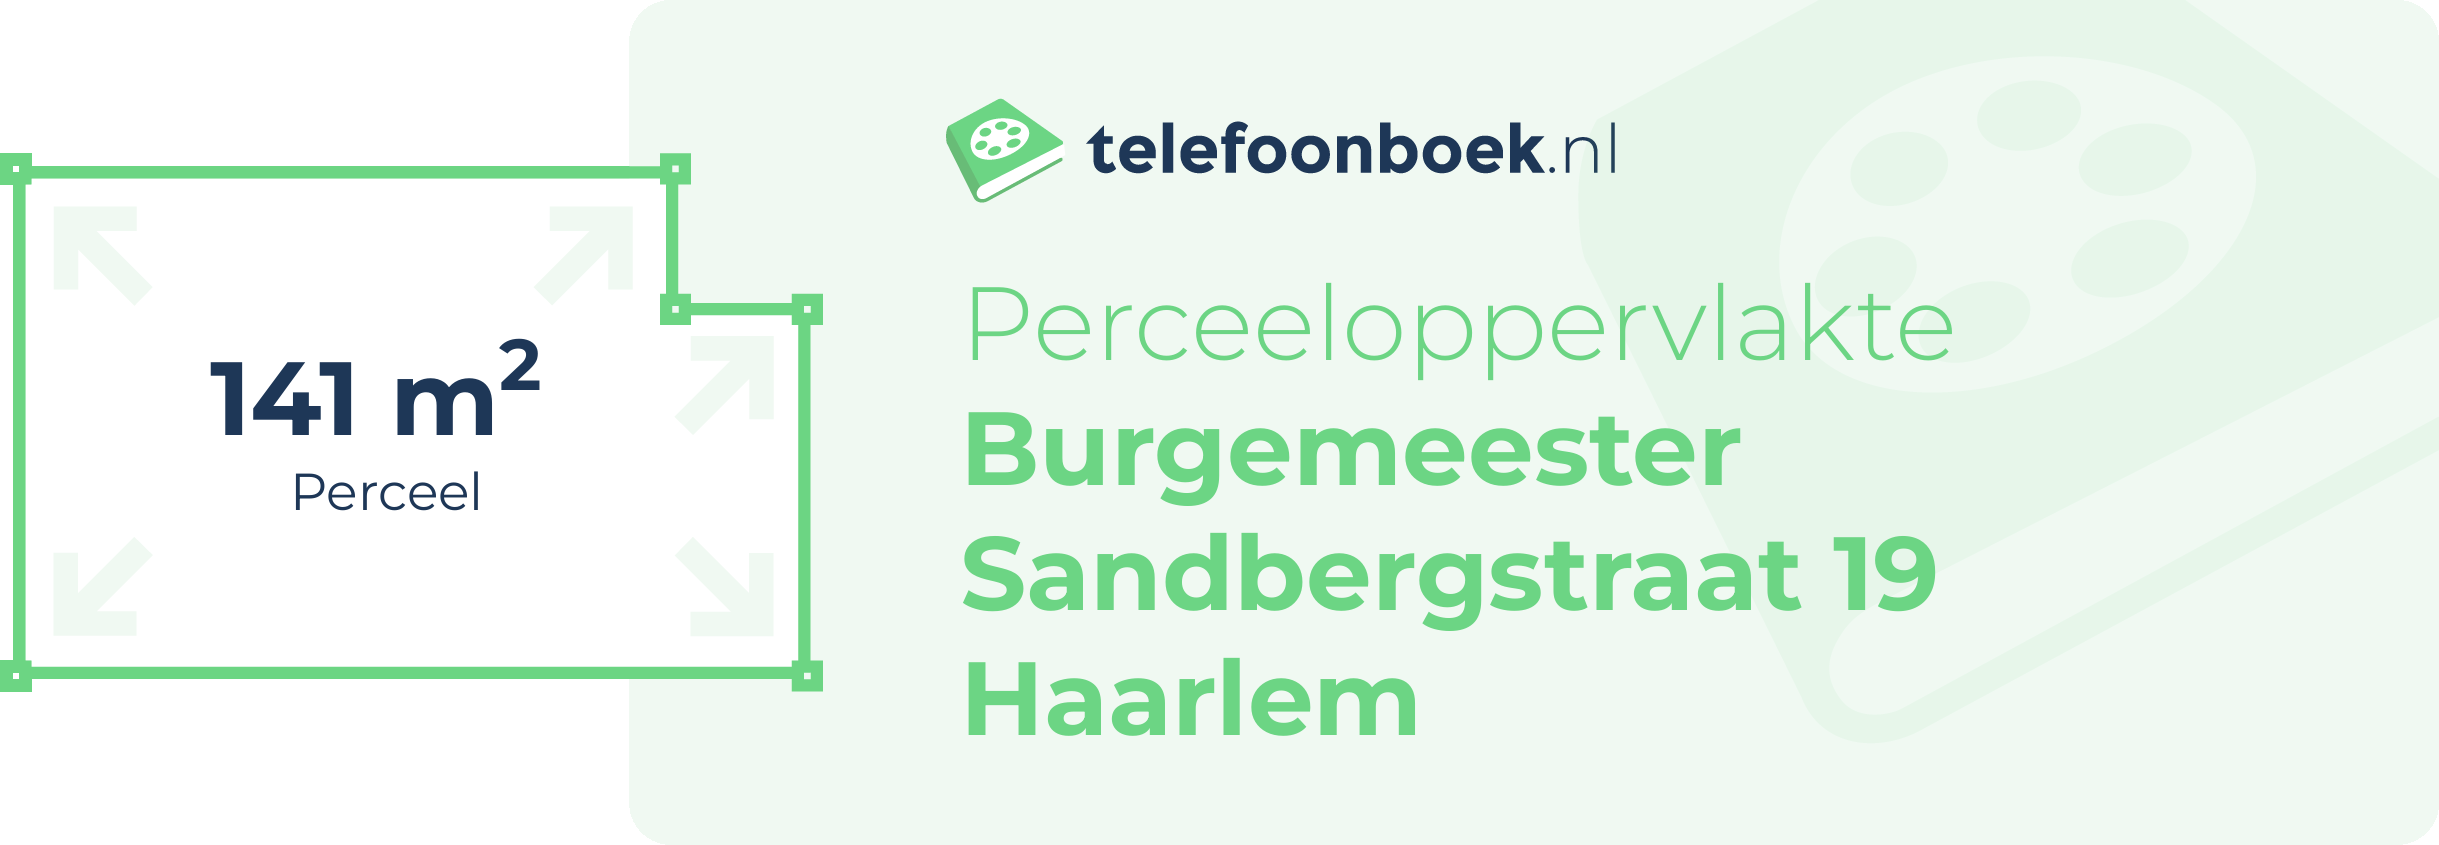 Perceeloppervlakte Burgemeester Sandbergstraat 19 Haarlem